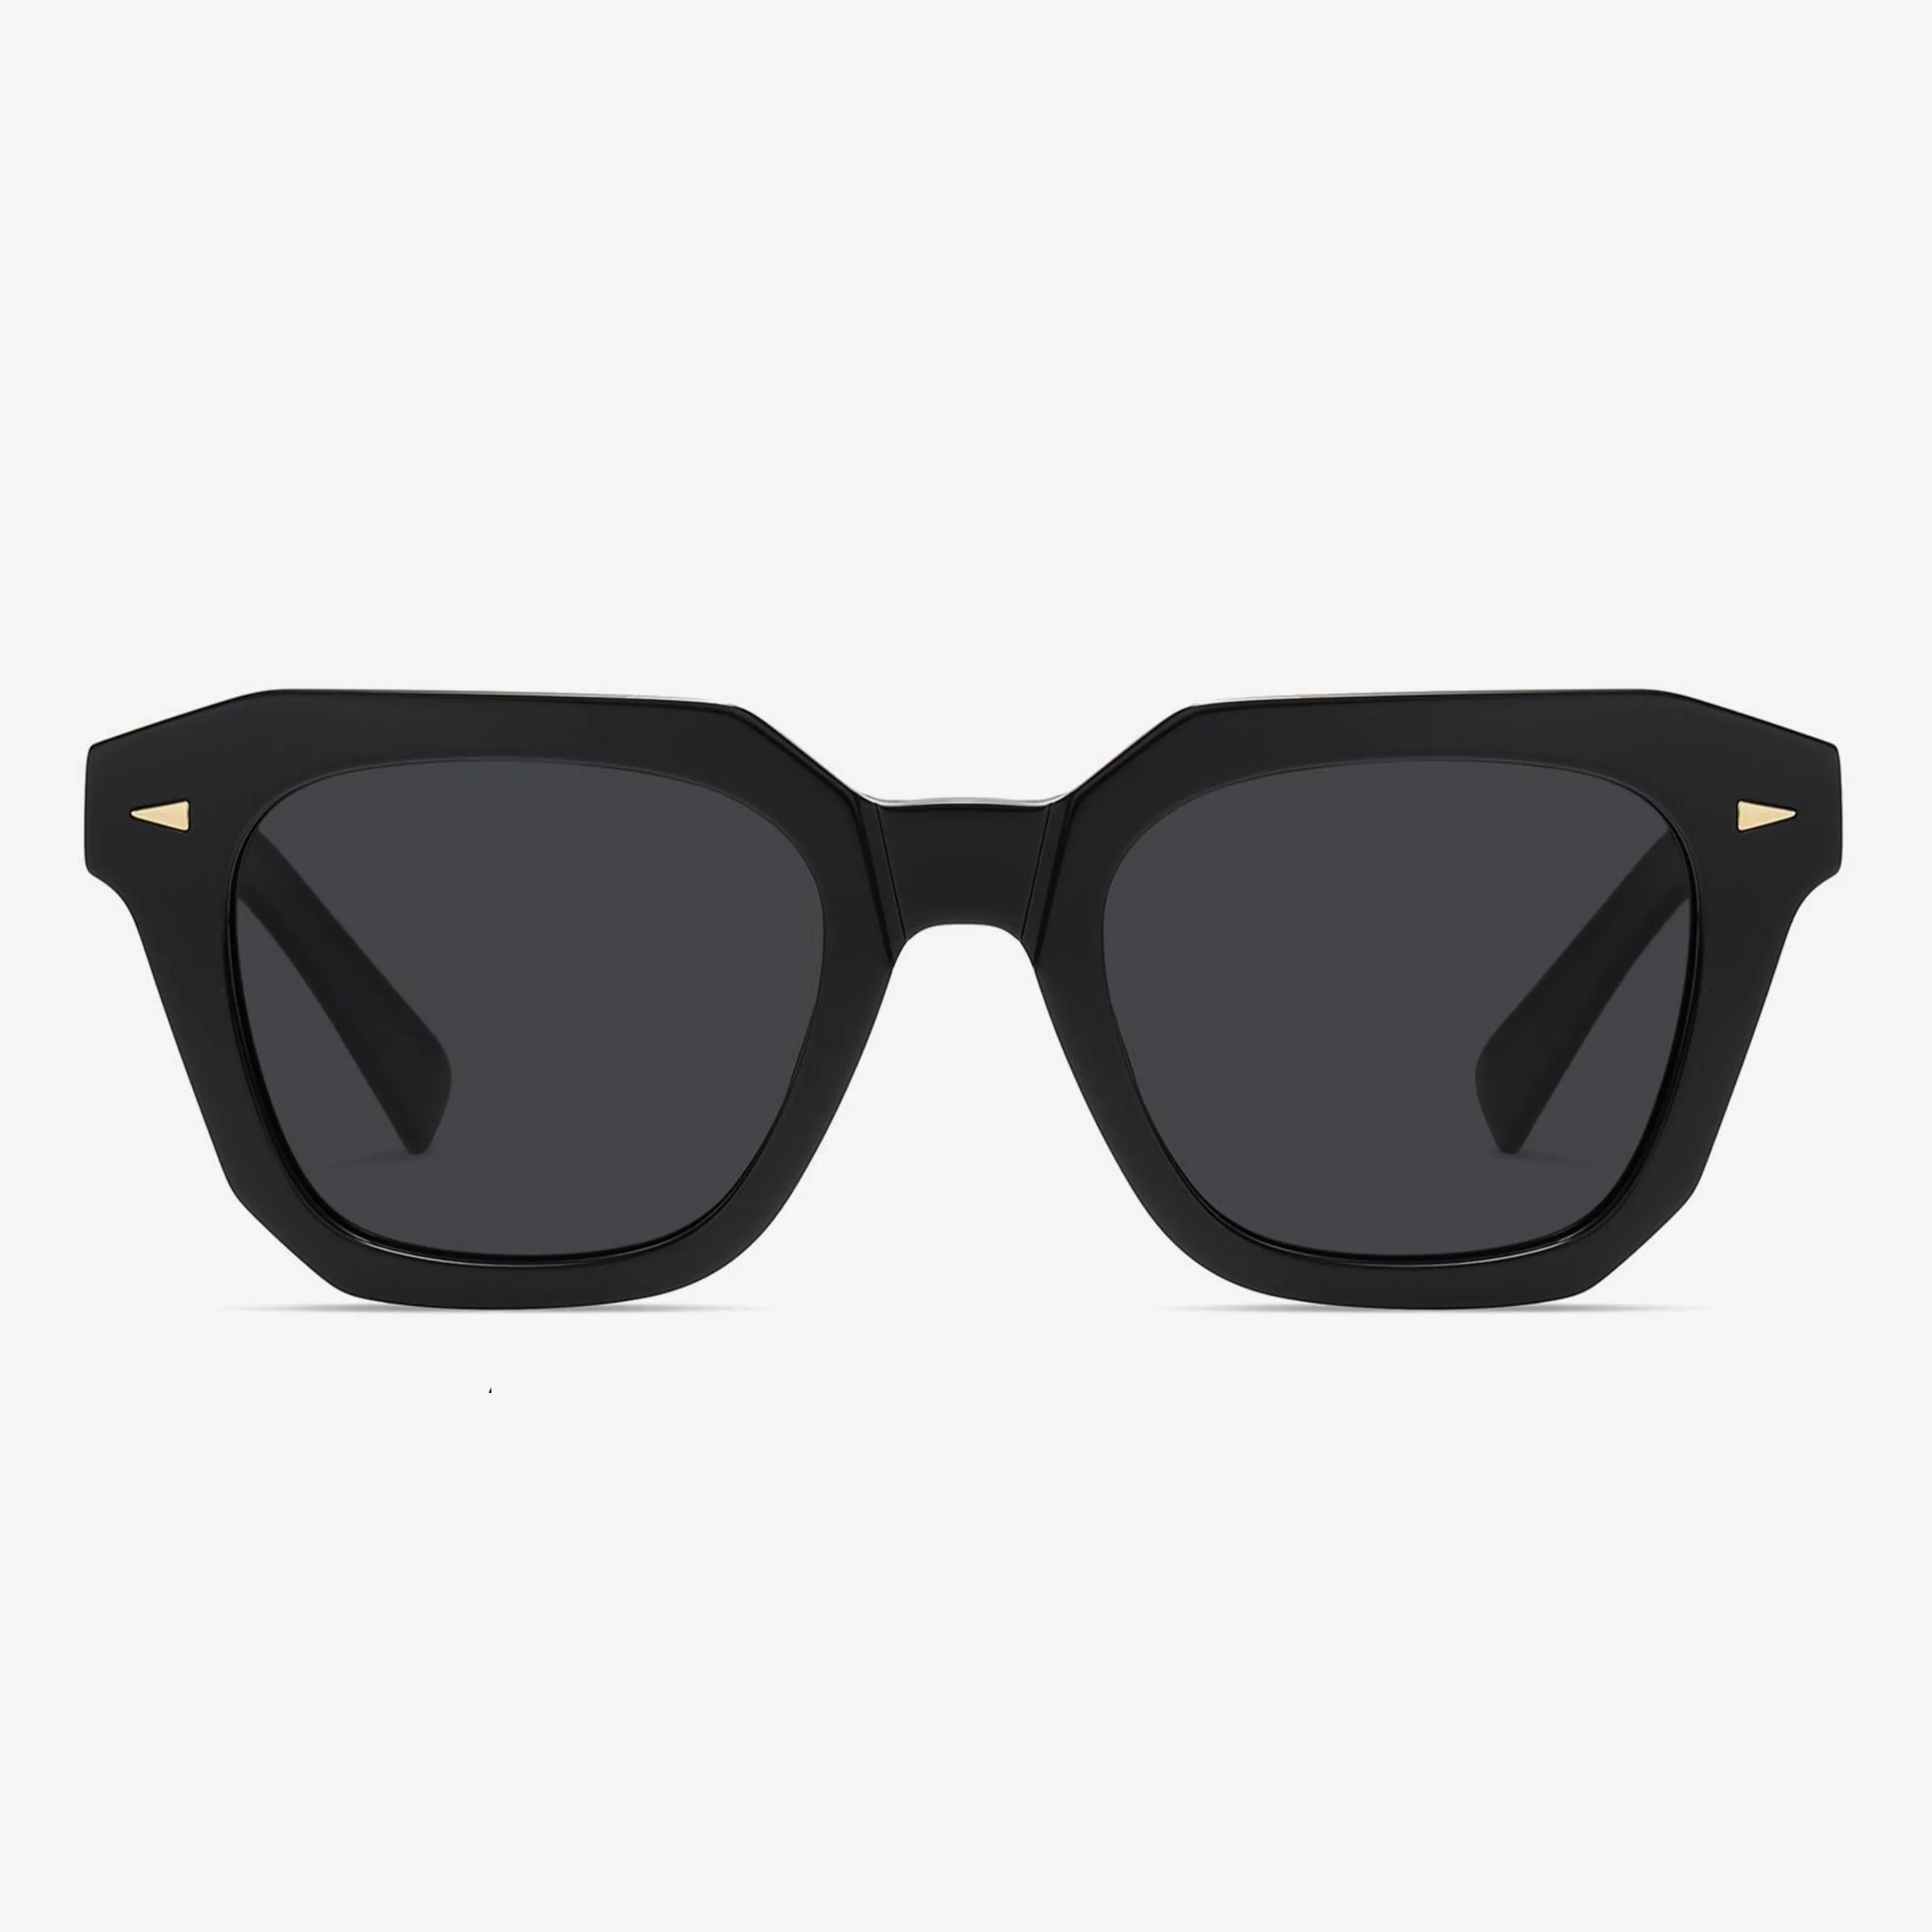 Venta al por mayor logotipo personalizado de gran tamaño grueso acetato gafas de sol protección Uv Tac lentes gafas de sol polarizadas para las mujeres